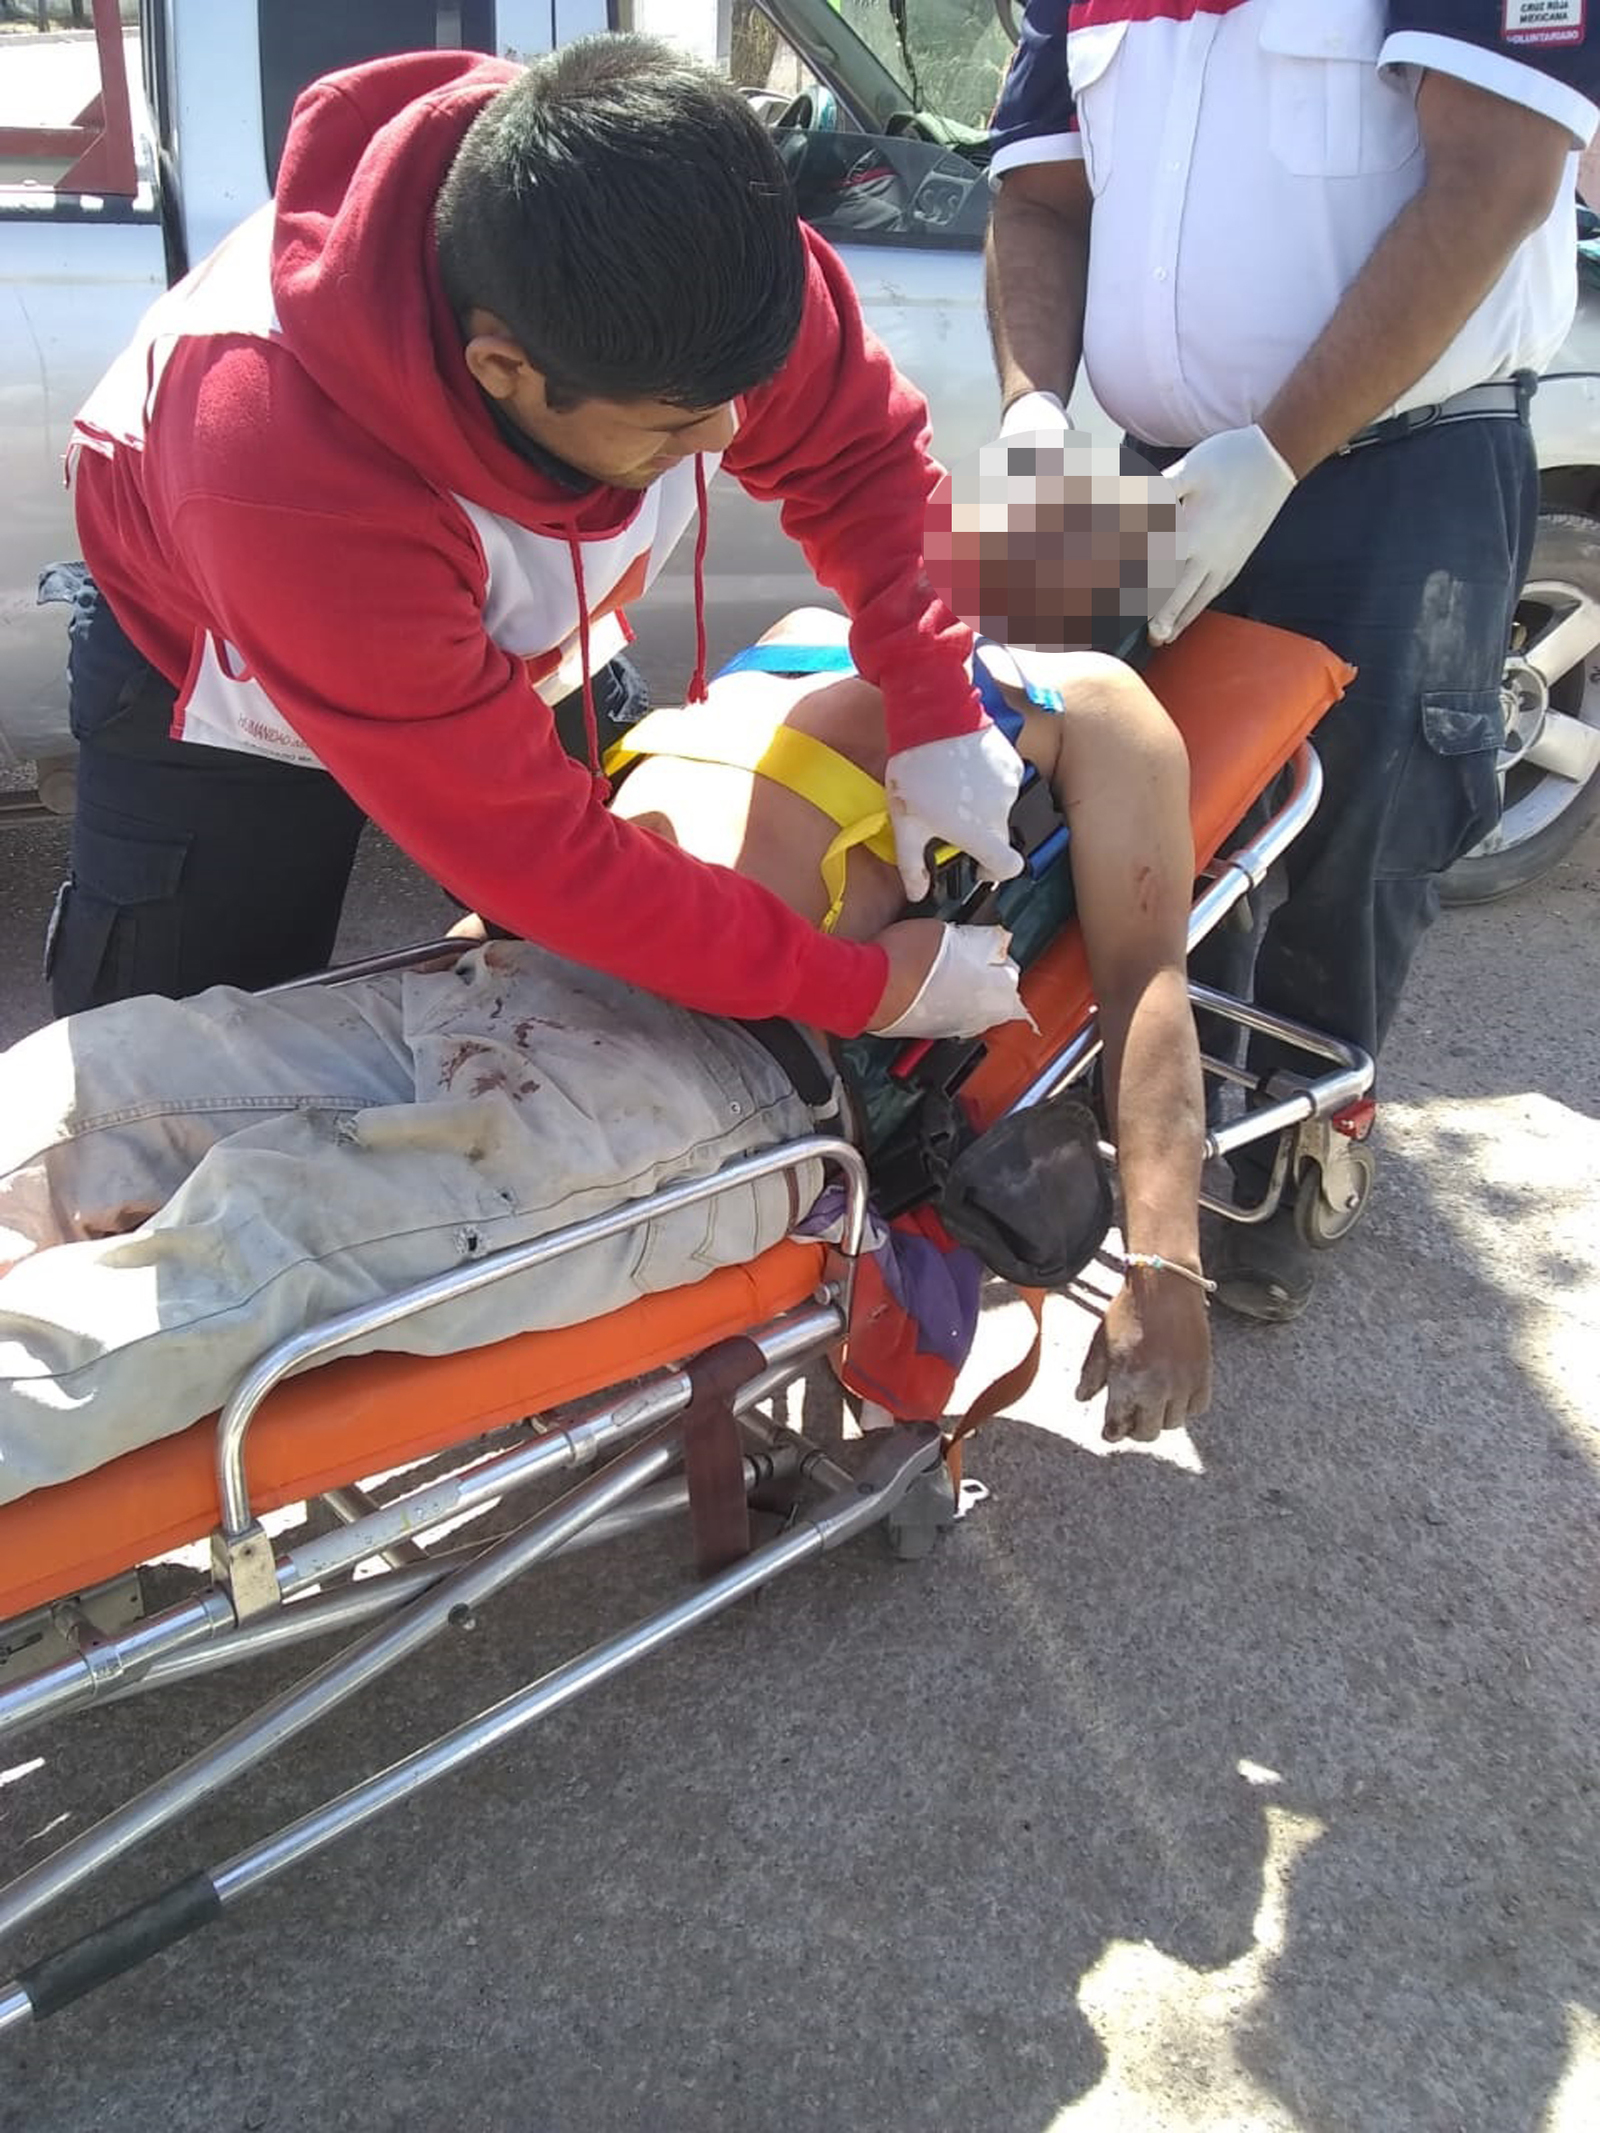 Joven trabajador termina prensado dentro de tolva, en bloquera de Lerdo, paramédicos lo auxiliaron y trasladaron al hospital.